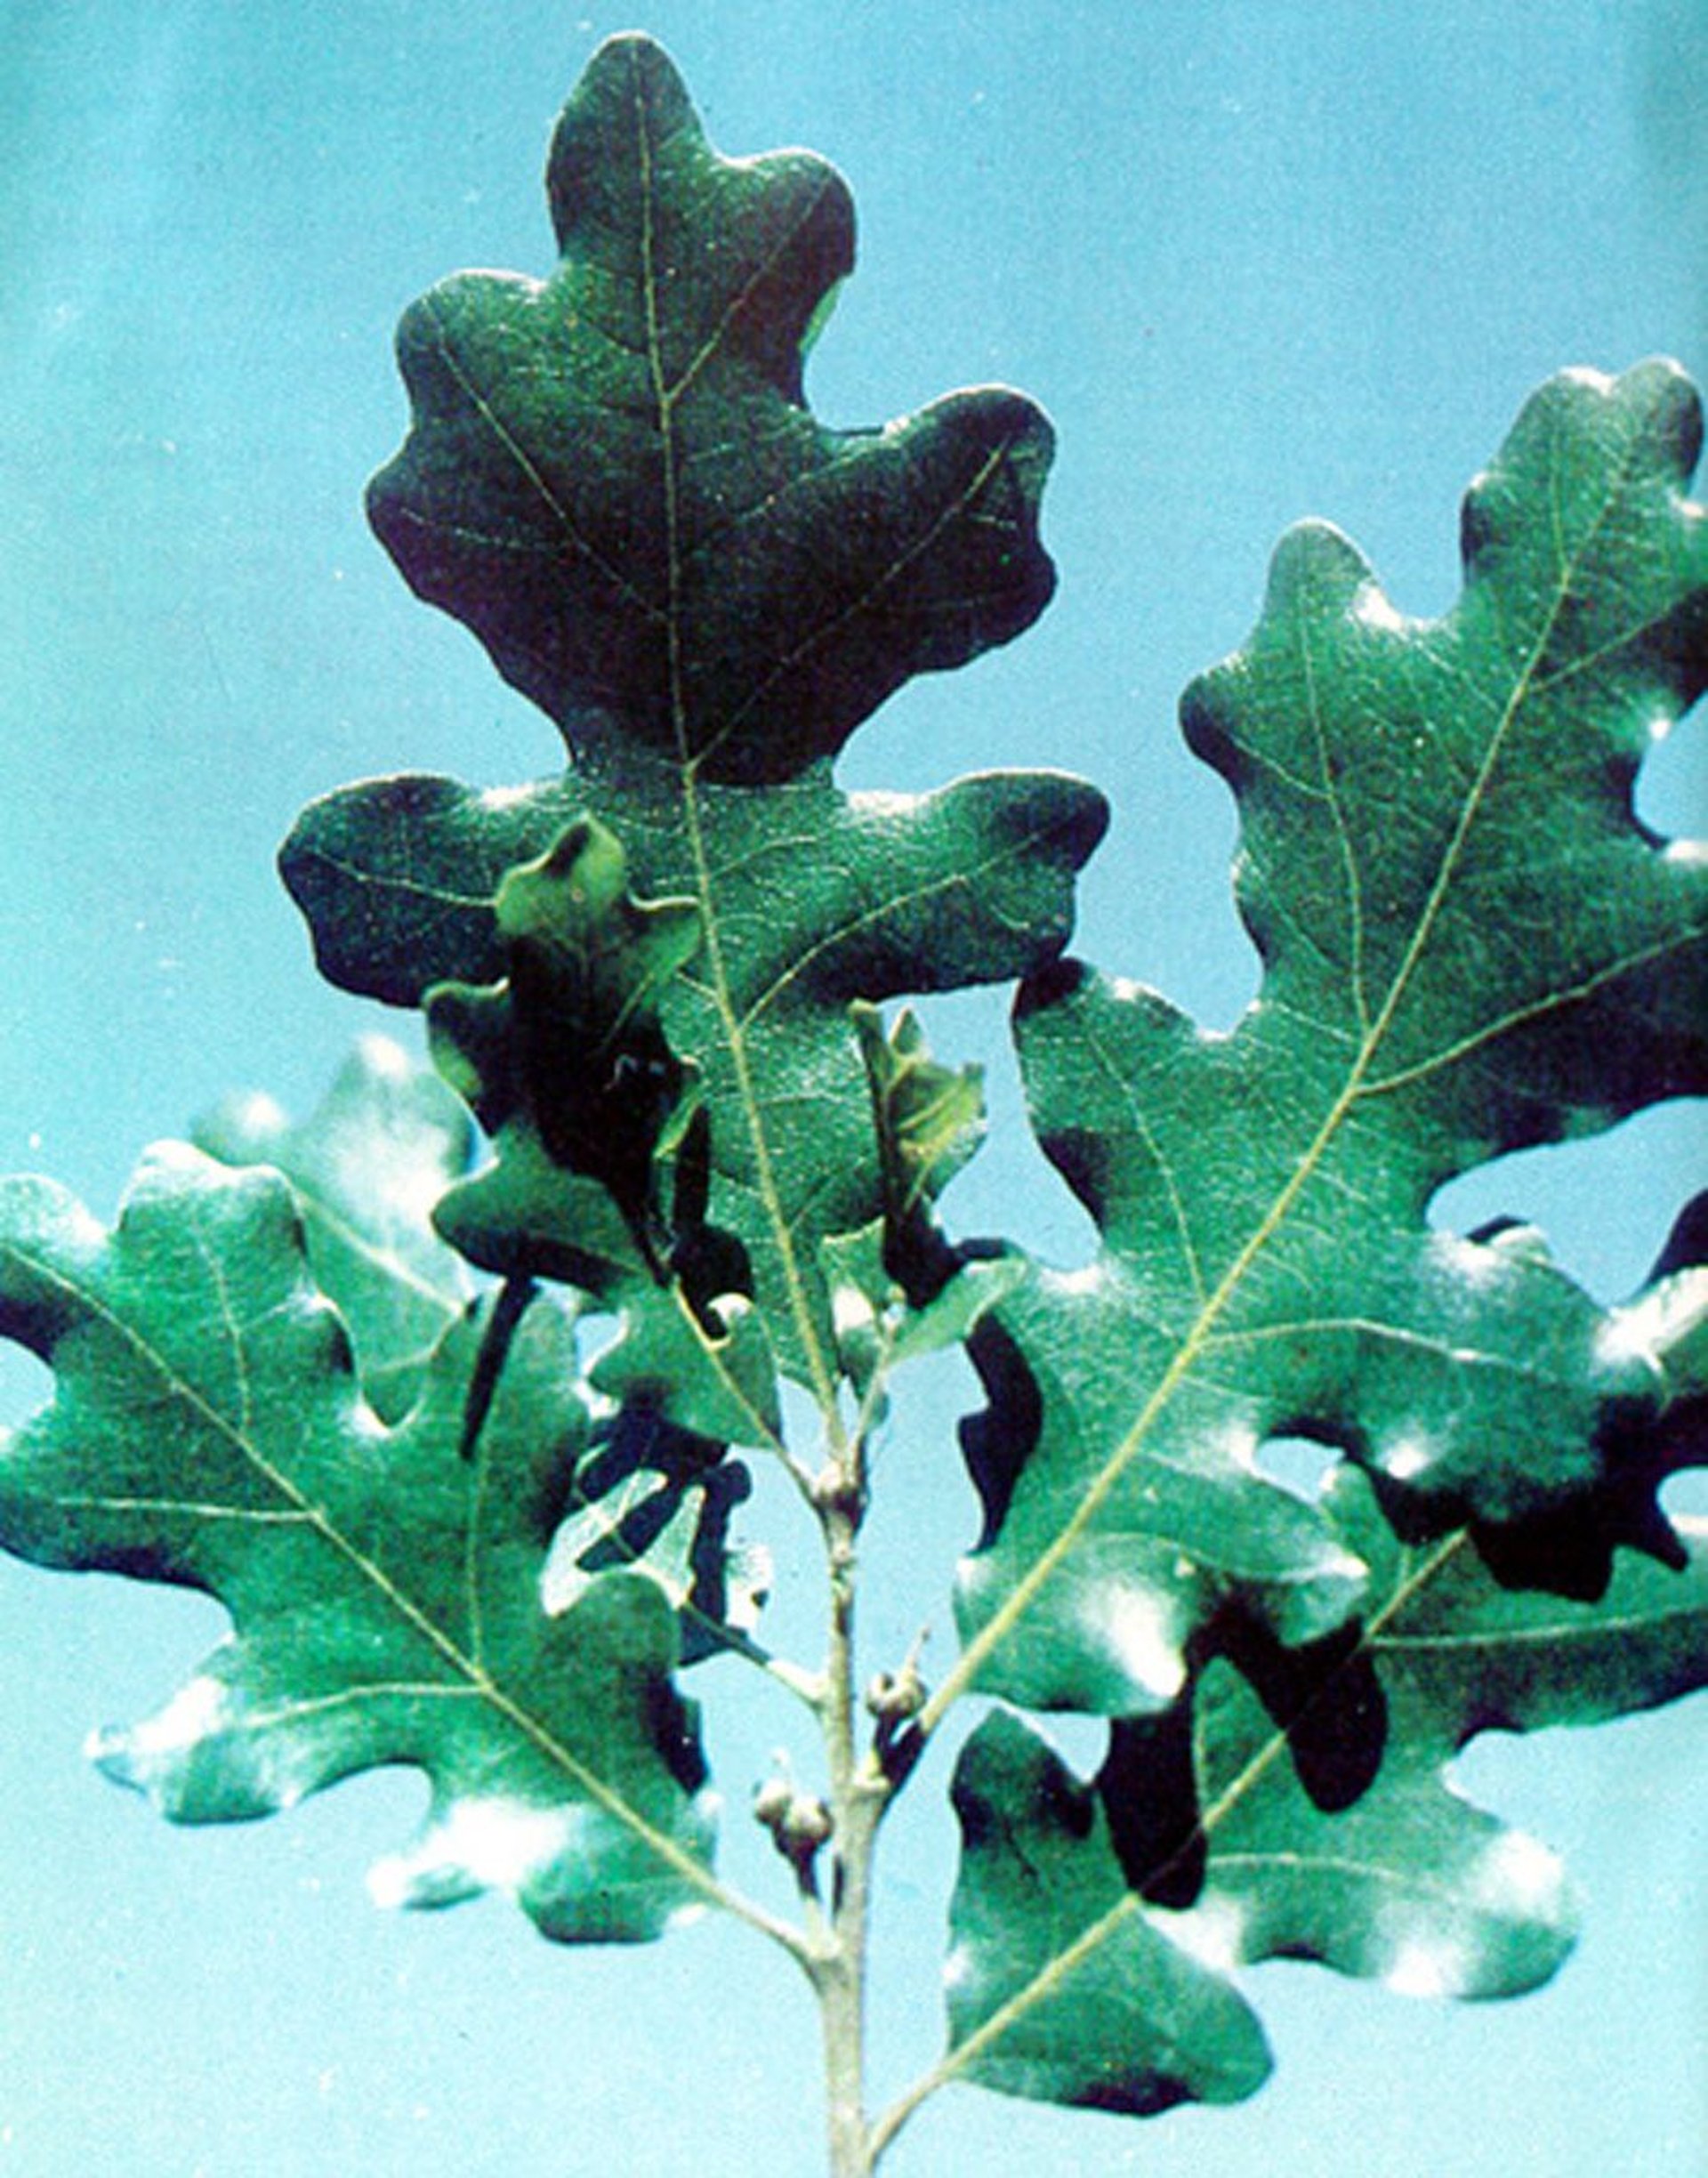 <i >Quercus</i> spp (Oak) leaves